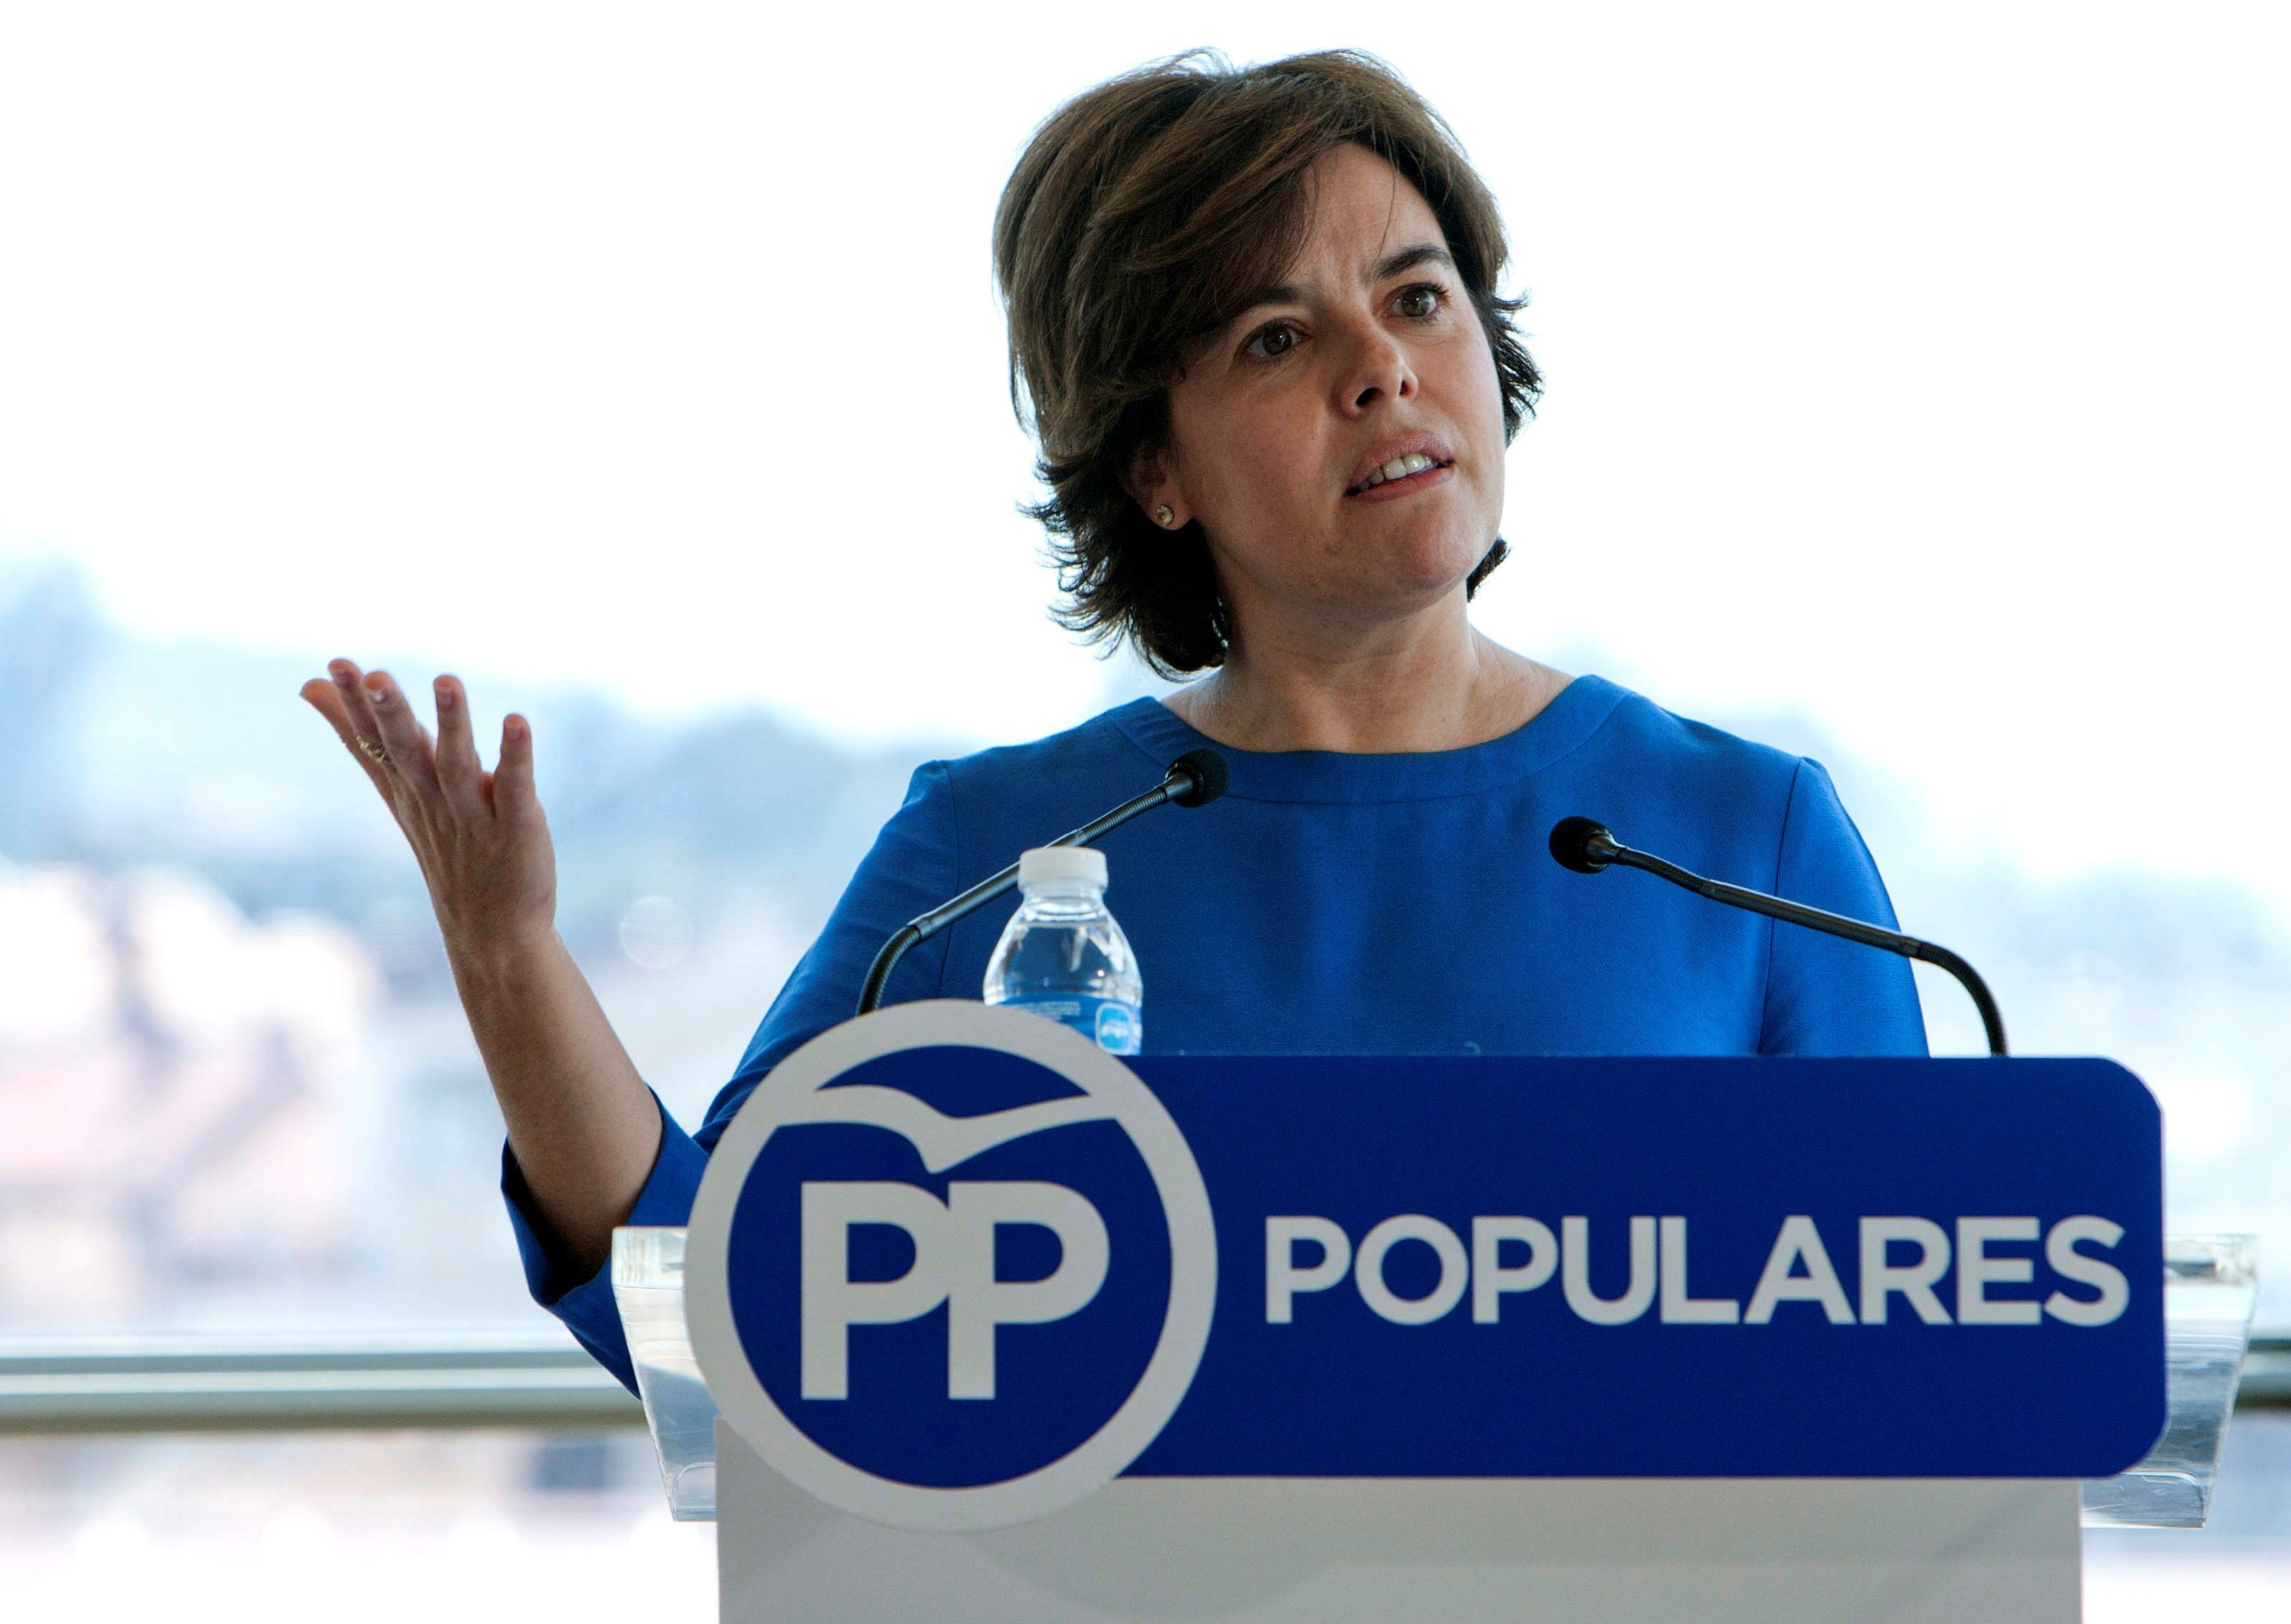 La candidata a la Presidencia del PP Soraya Sáenz de Santamaría durante su intervención en un acto con afiliados en Pontevedra. EFE